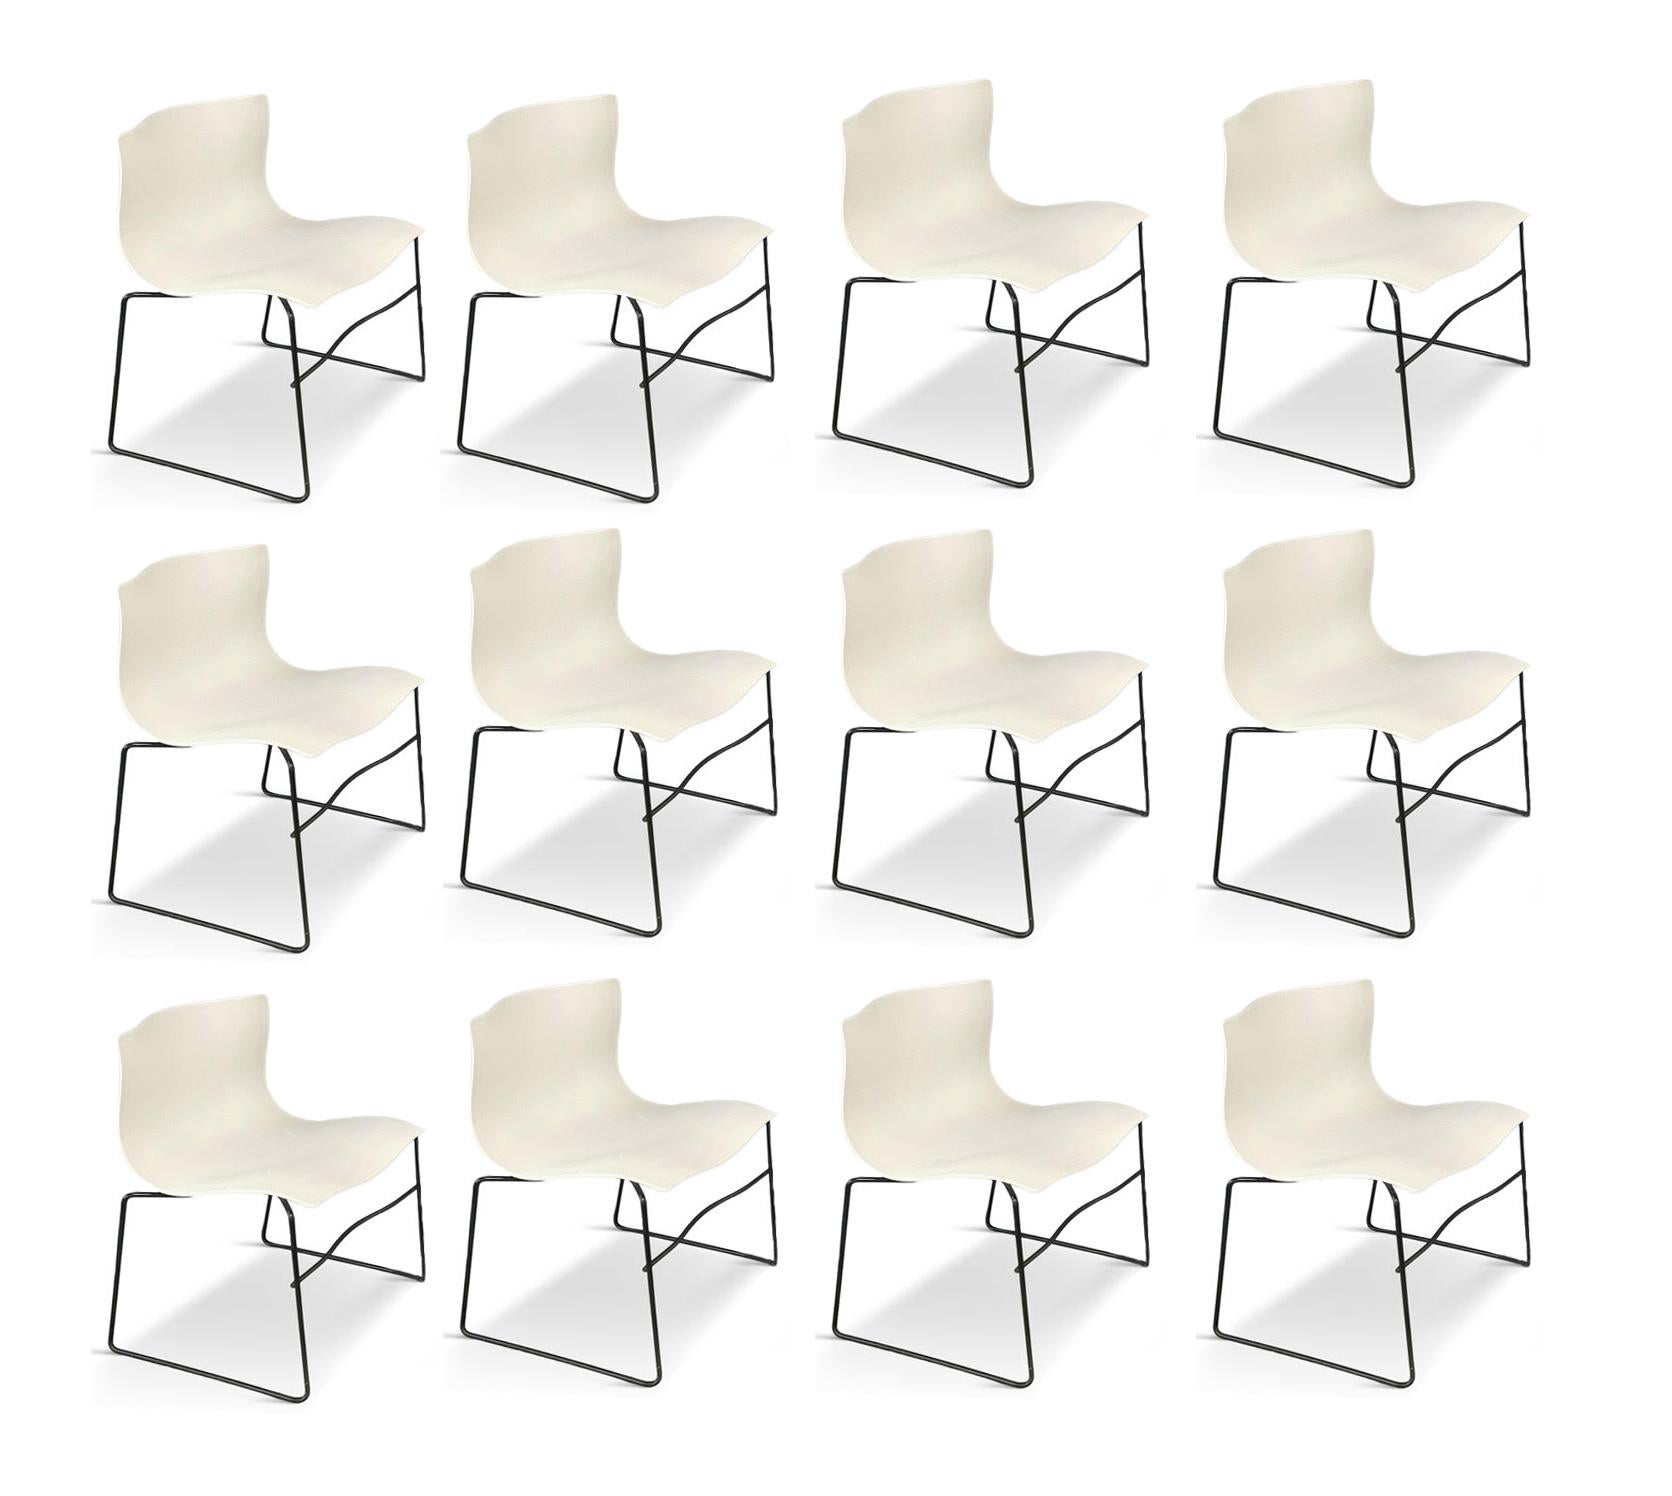 Design iconique de Massimo Vignelli pour Knoll. Ces chaises éthérées, qui semblent flotter dans l'air, sont entièrement étiquetées avec un motif Knoll, Vignelli en relief et une étiquette Knoll en papier.